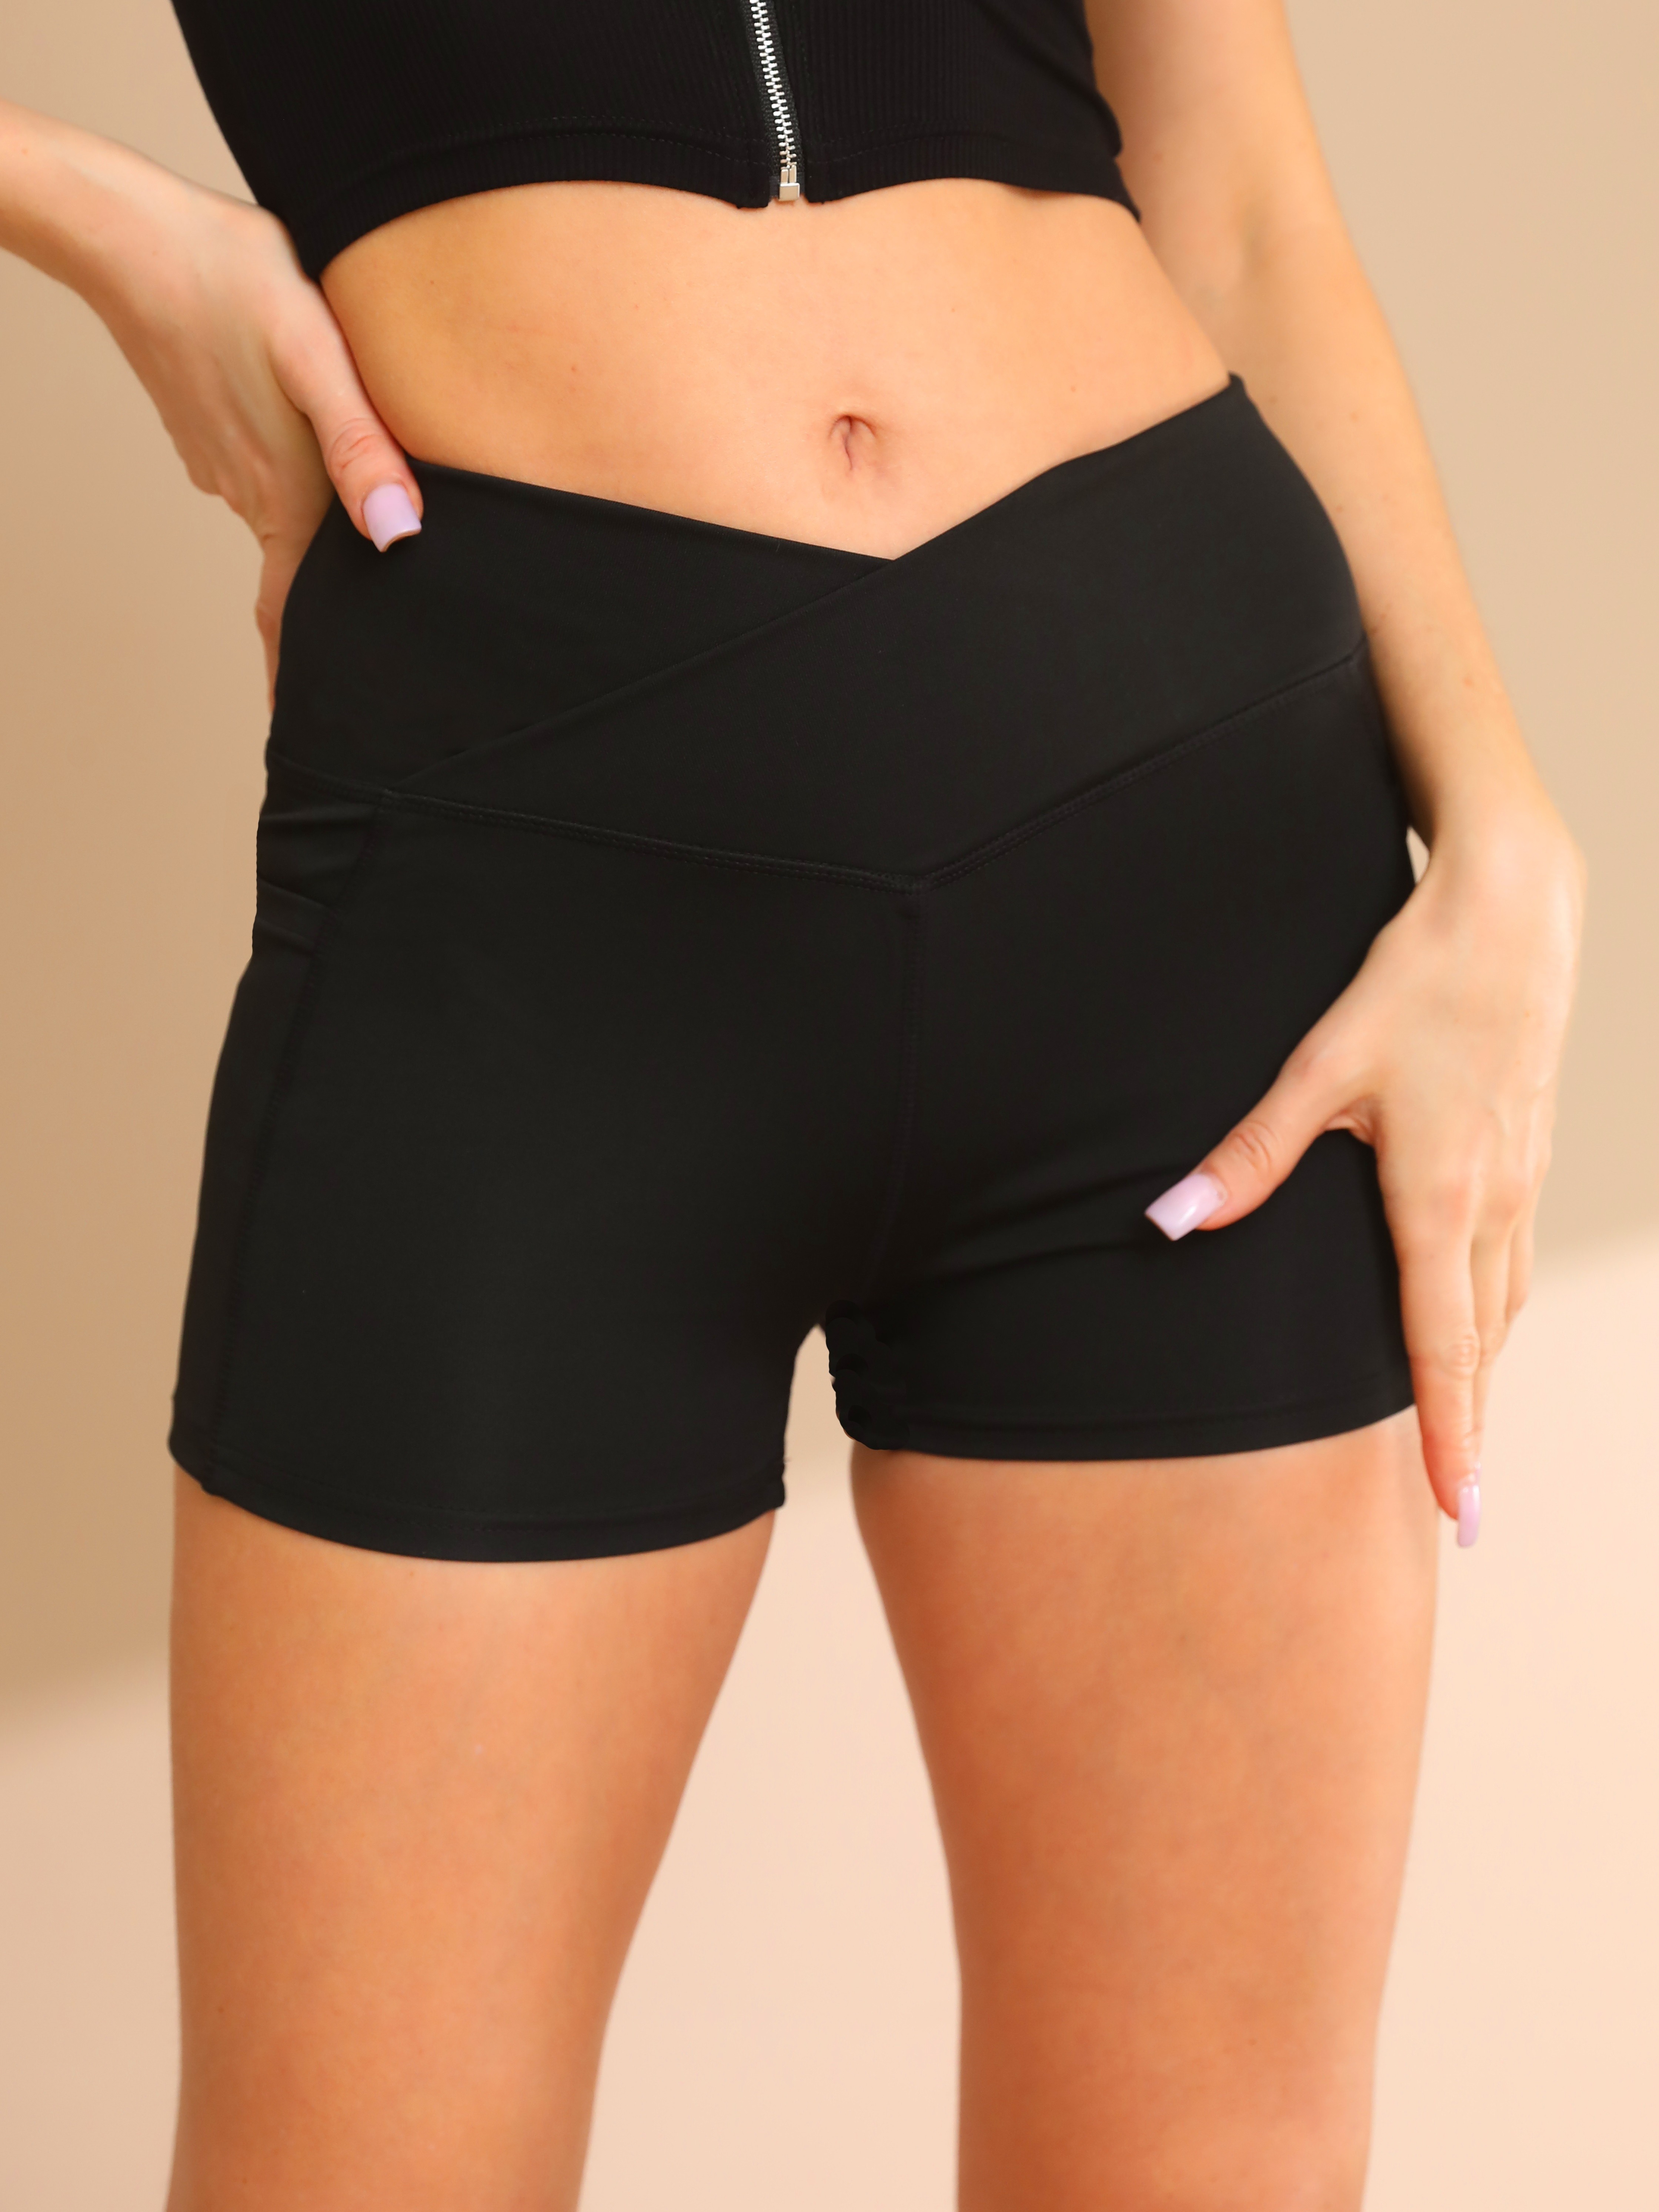 Women Black High Waisted Yoga Shorts Size Large Side Pockets 